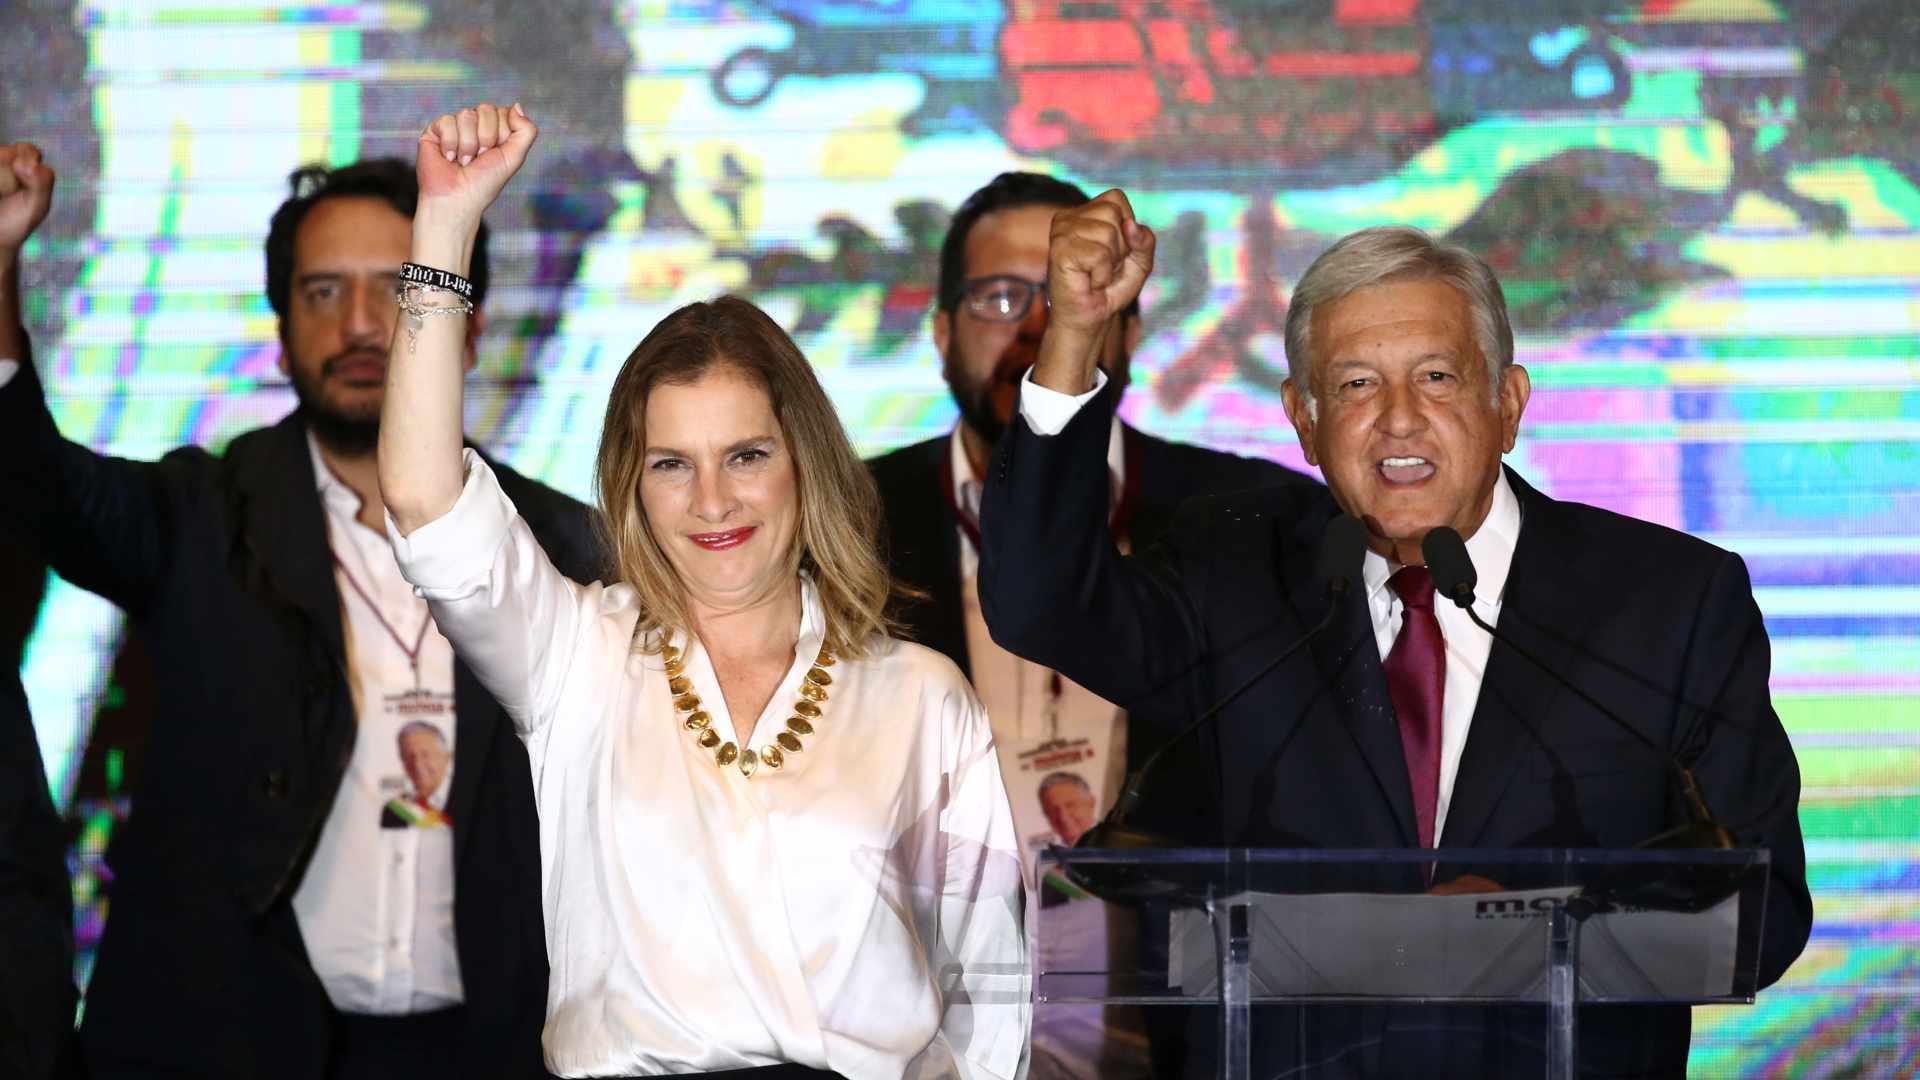 El izquierdista López Obrador gana las elecciones presidenciales en México